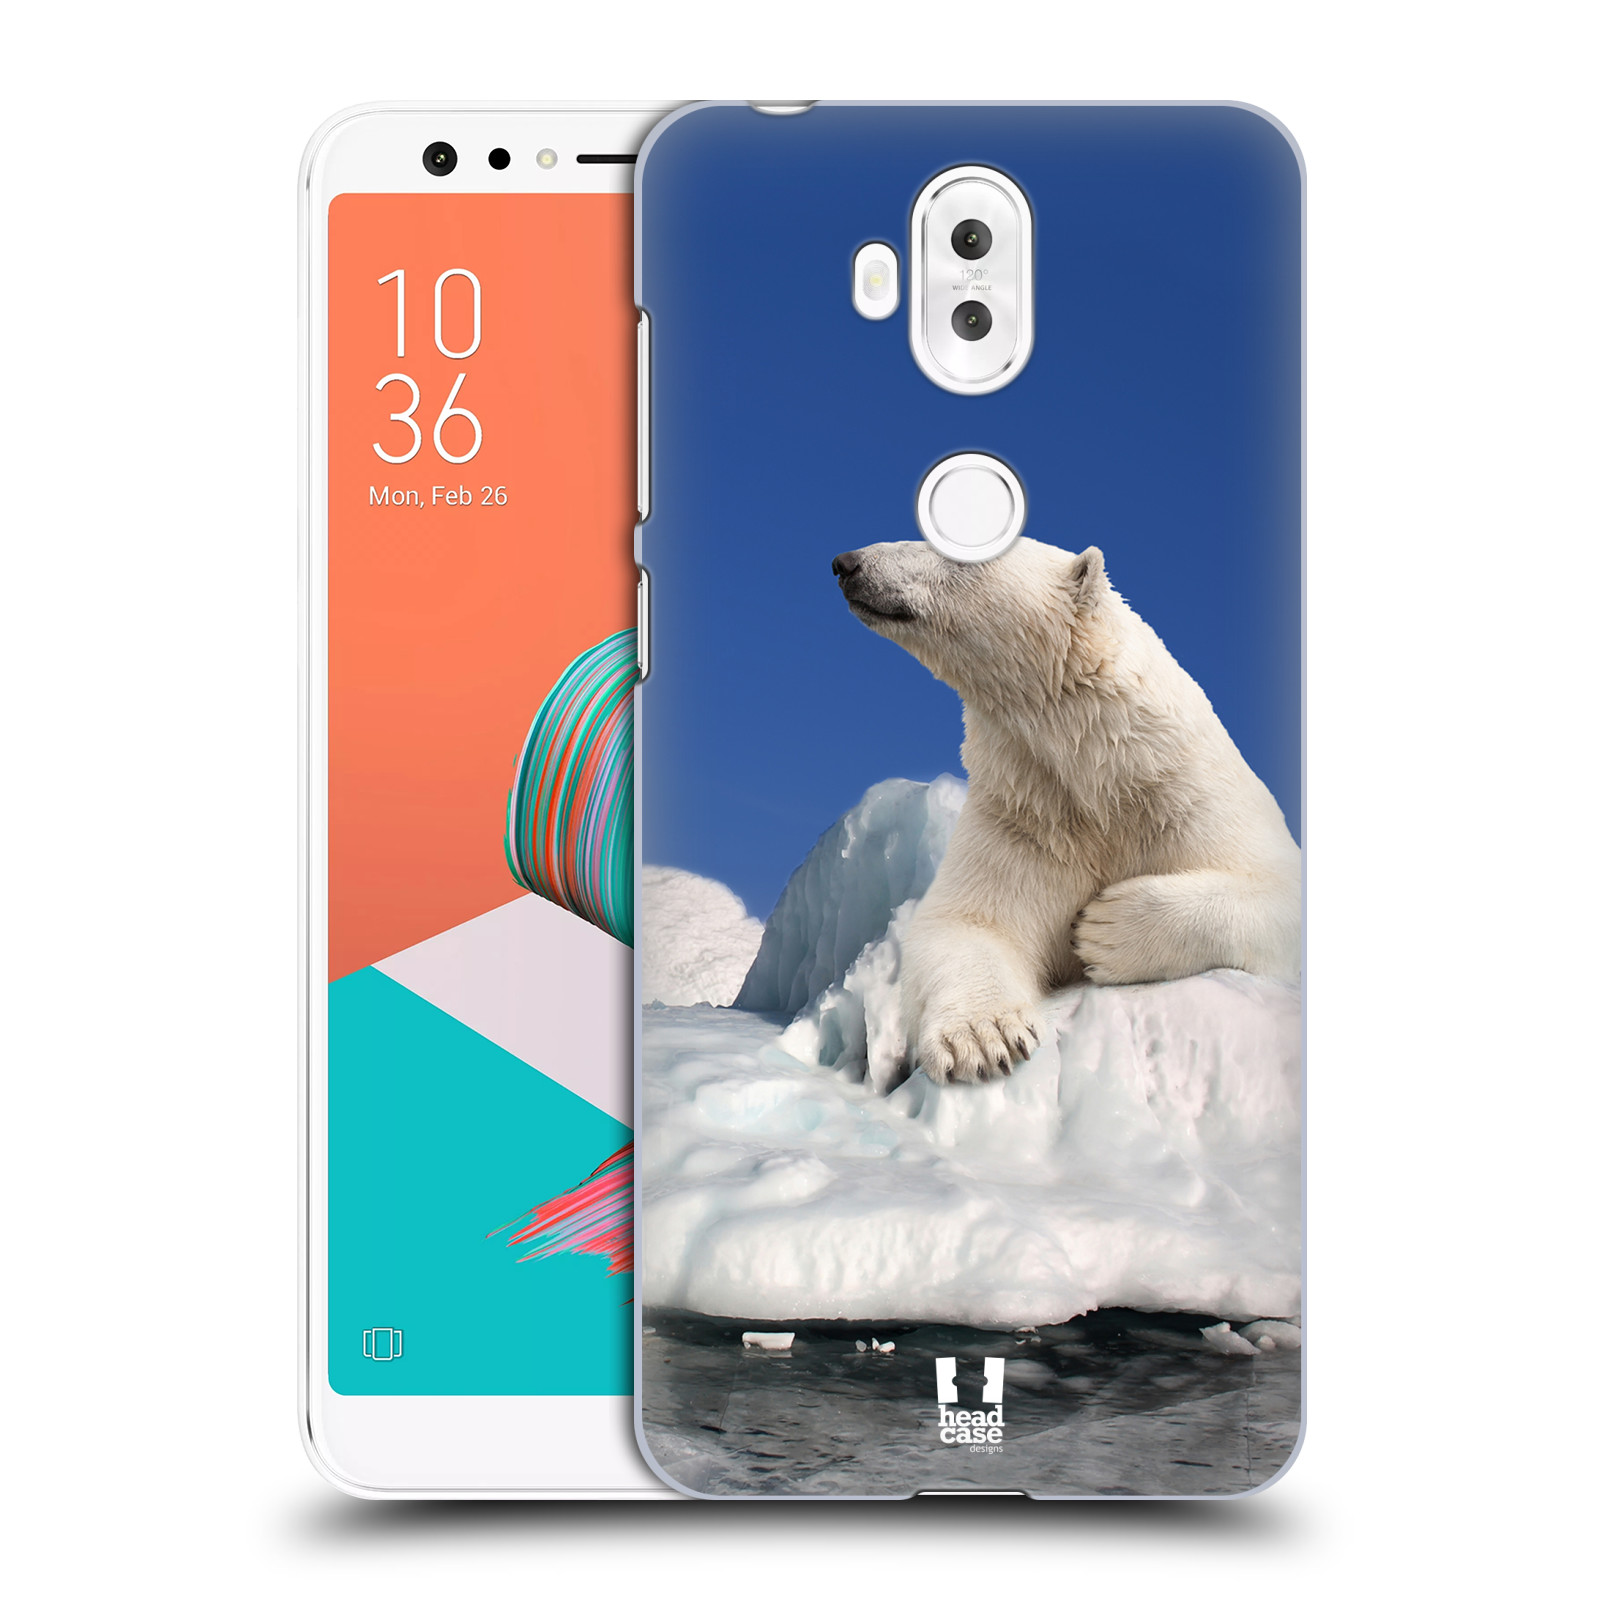 HEAD CASE plastový obal na mobil Asus Zenfone 5 LITE ZC600KL vzor Divočina, Divoký život a zvířata foto LEDNÍ MEDVĚD NA LEDOVCI A NEBE MODRÁ